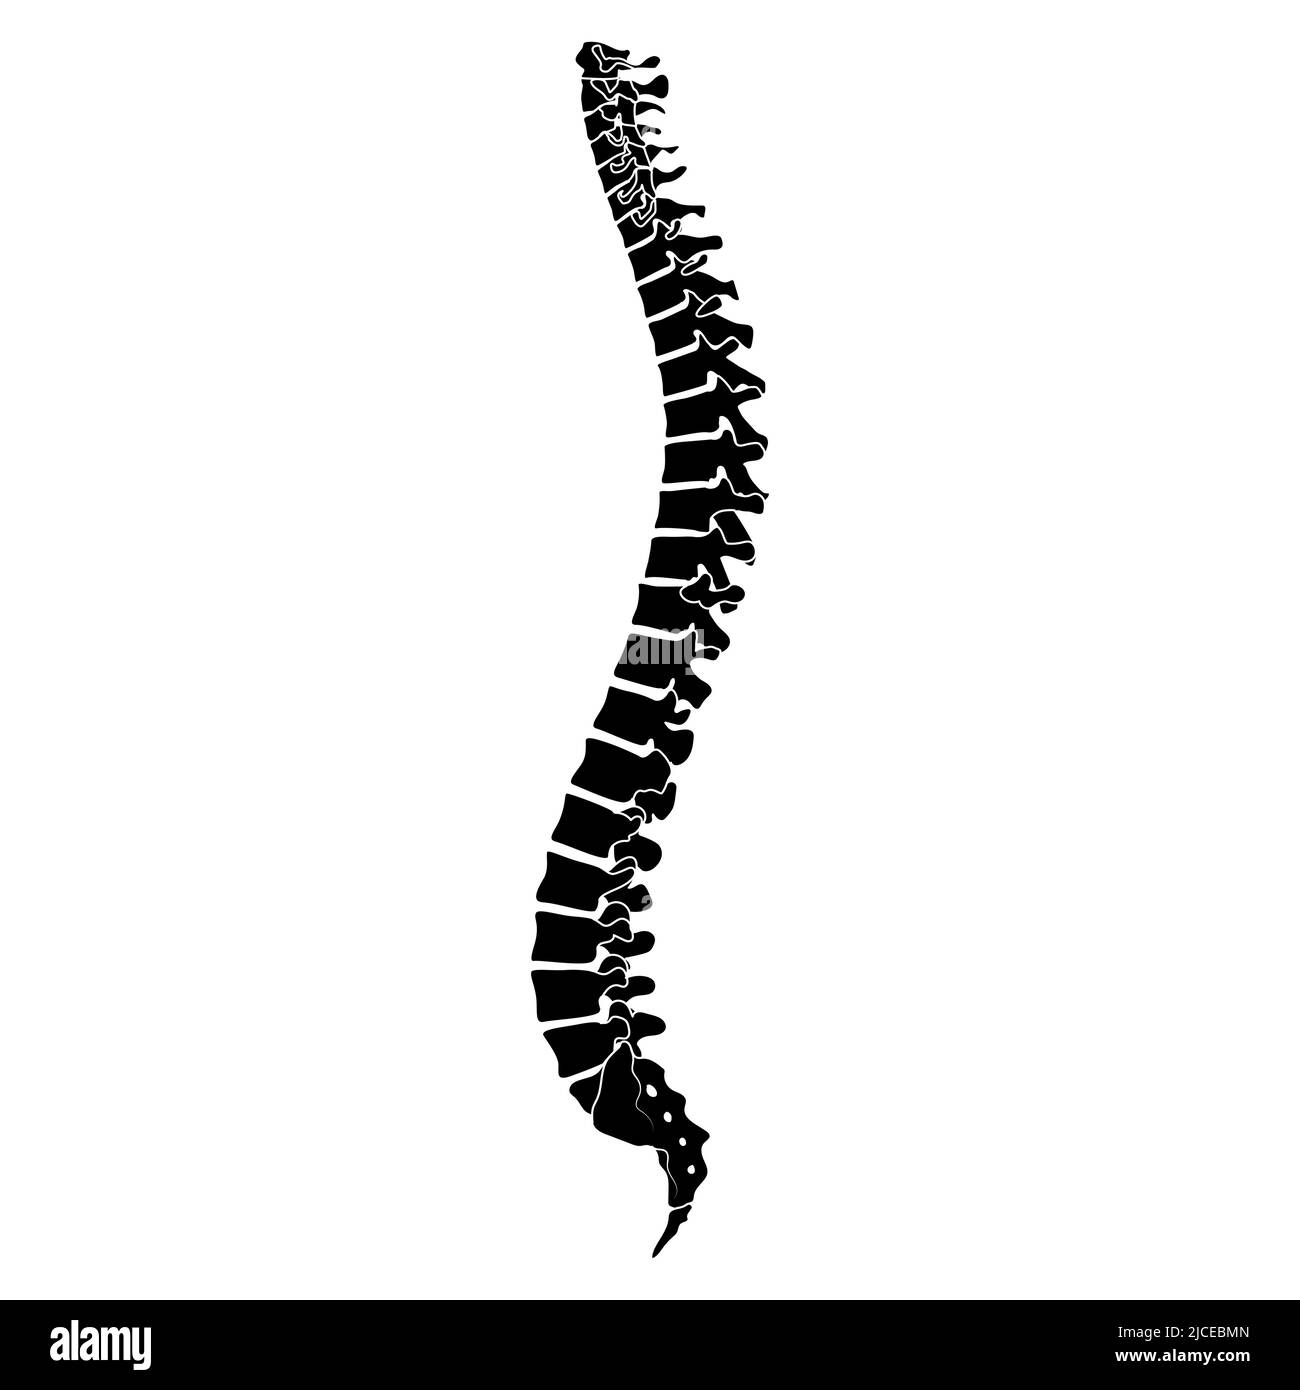 Esqueleto Columna Vertebral Humana Silueta Espina Dorsal Cuerpo Huesos Sacro Vértebras Lado 7265